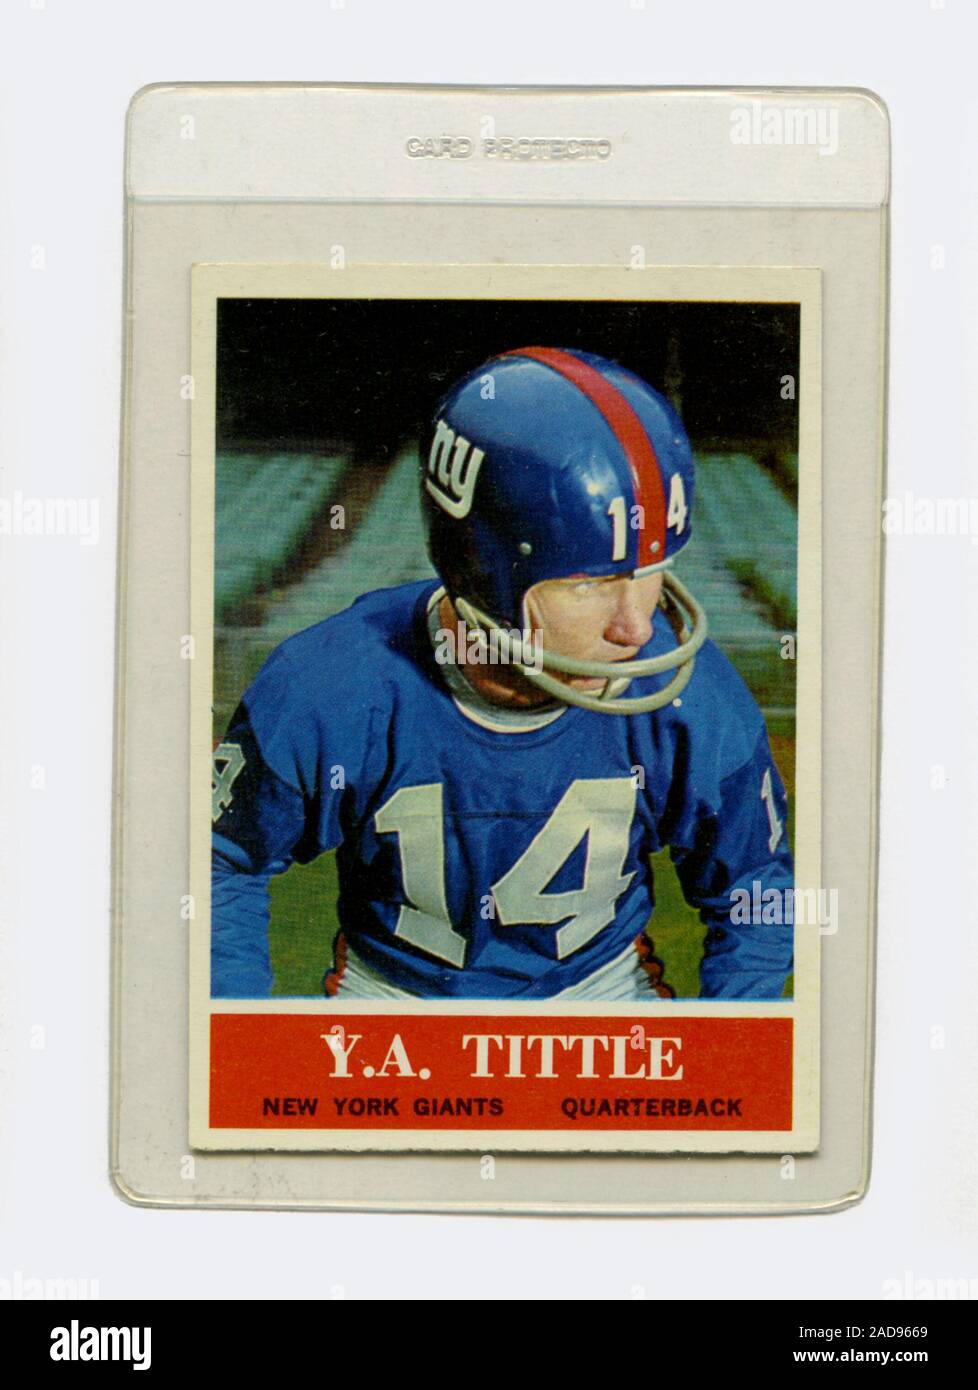 Vintage Football Card von Y.A. Tittle, Quarterback für die New York Giants in der NFL, durch Philadelphia Gummi im Jahr 1964 herausgegeben. Stockfoto